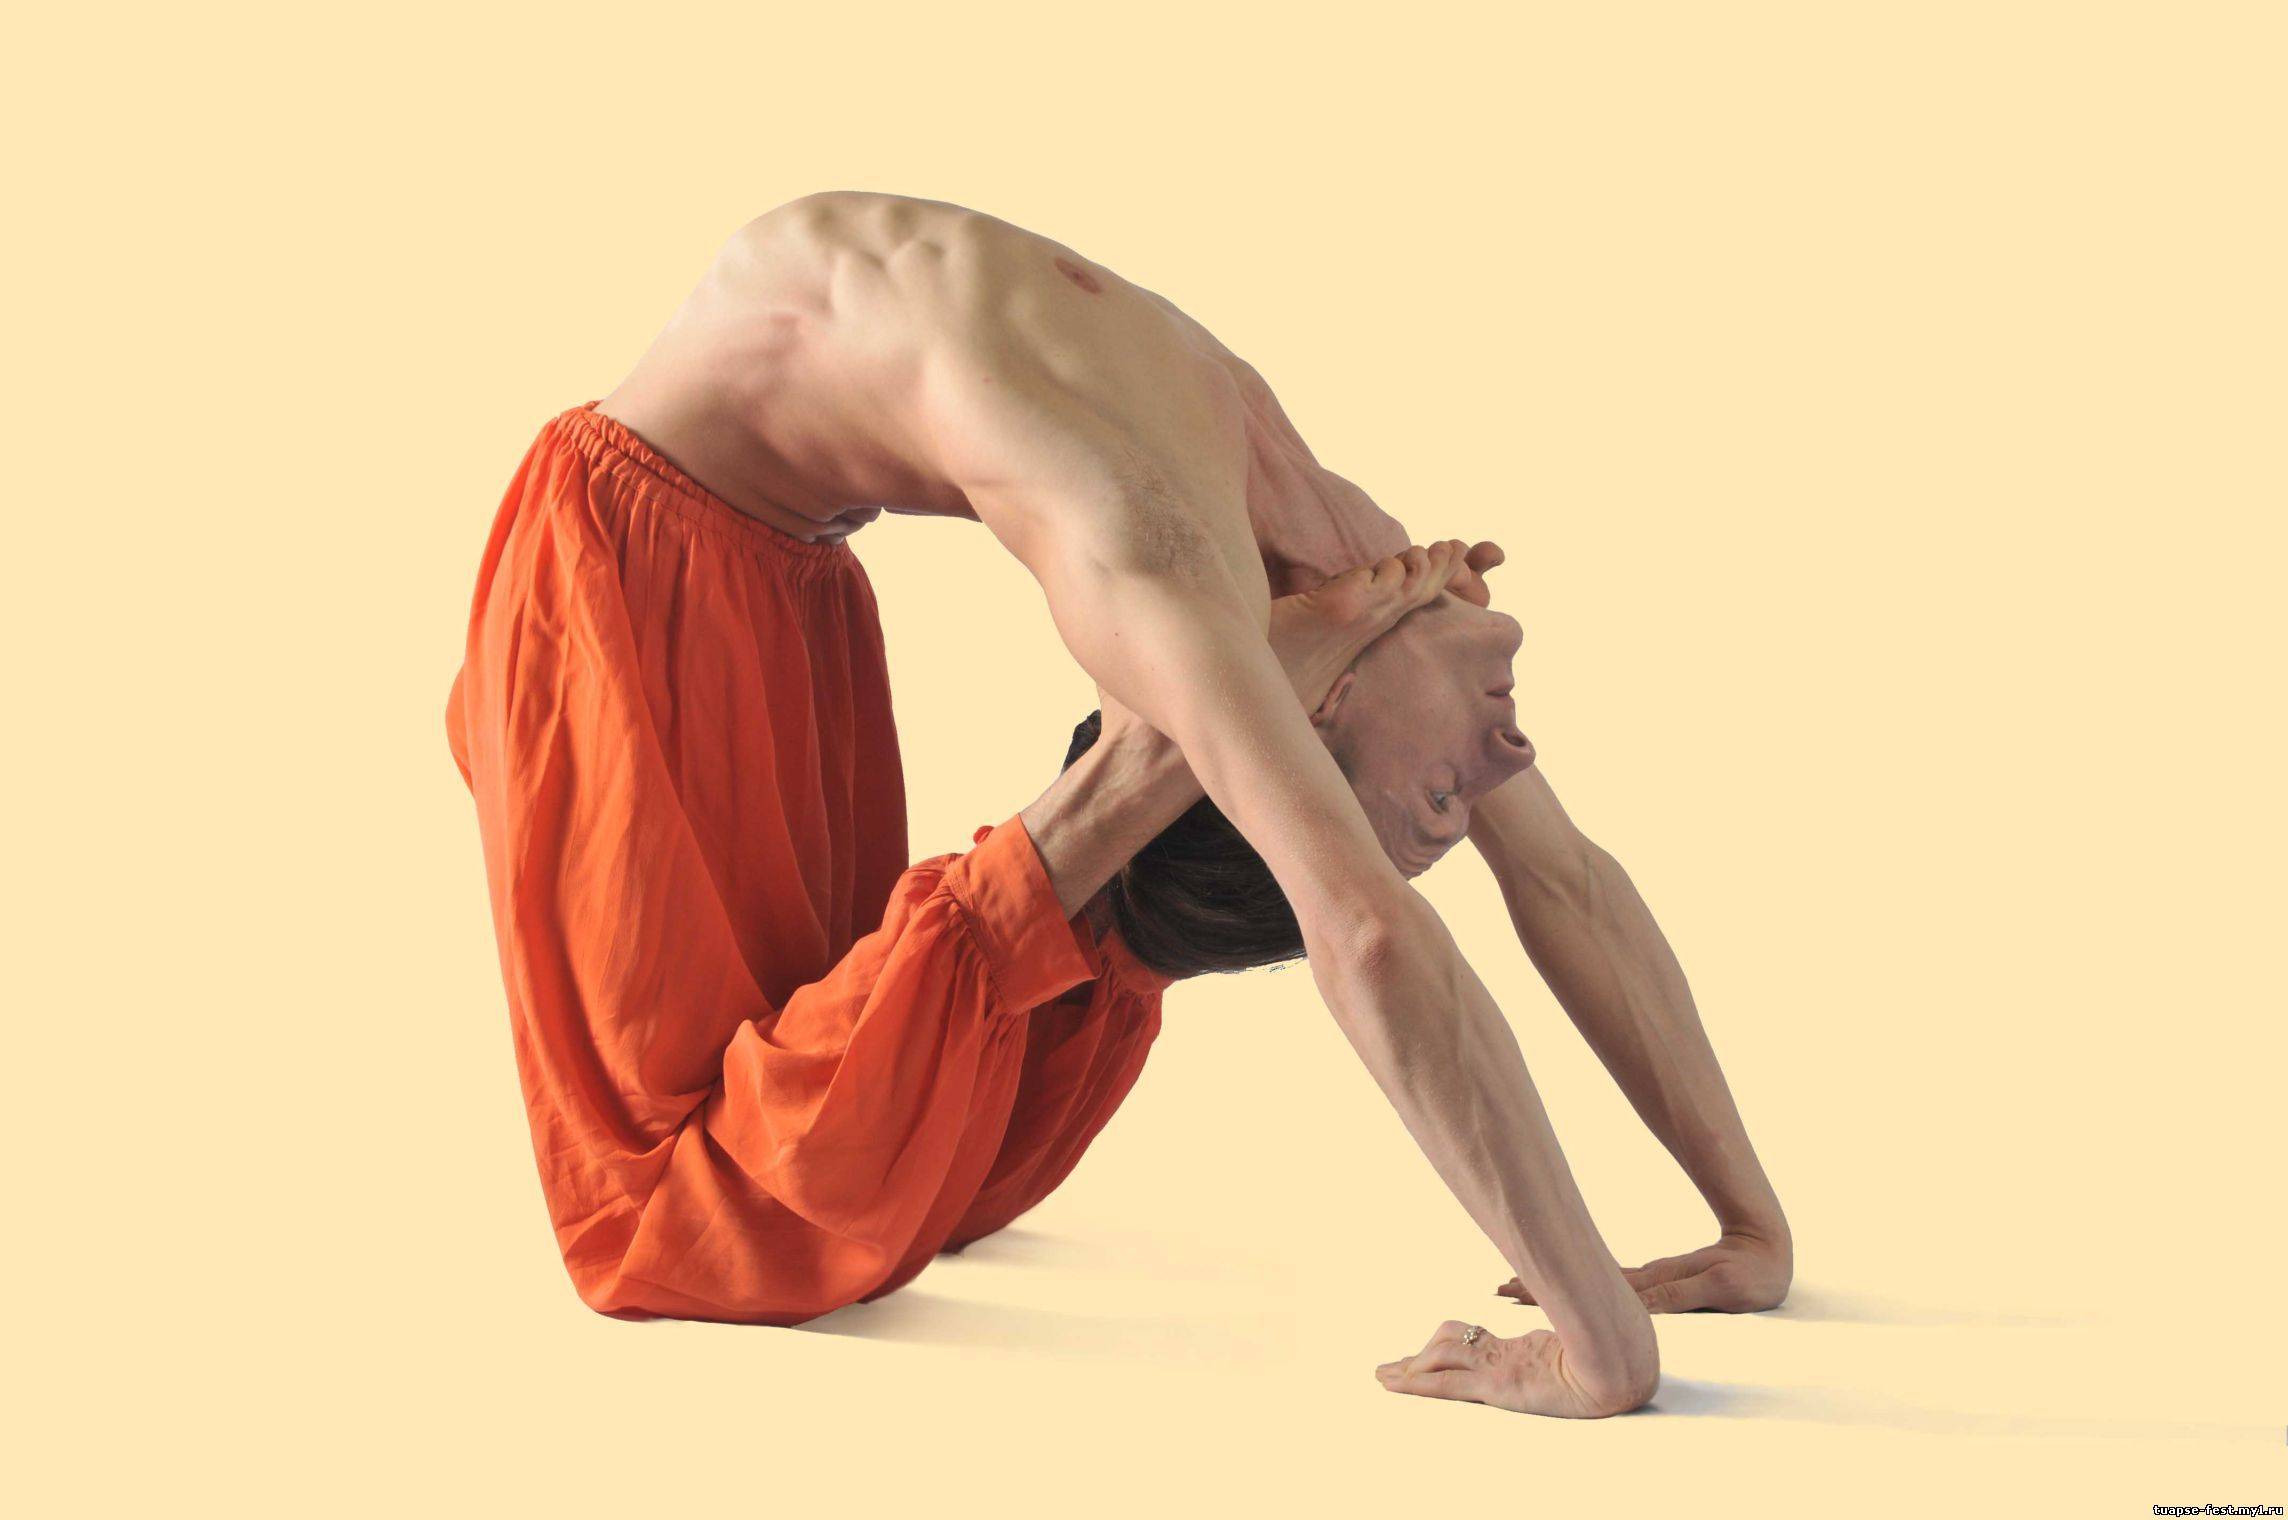 Пранаяма - техника дыхания в йоге для начинающих, дыхательные упражнения для работы с энергией | студия йоги чакра